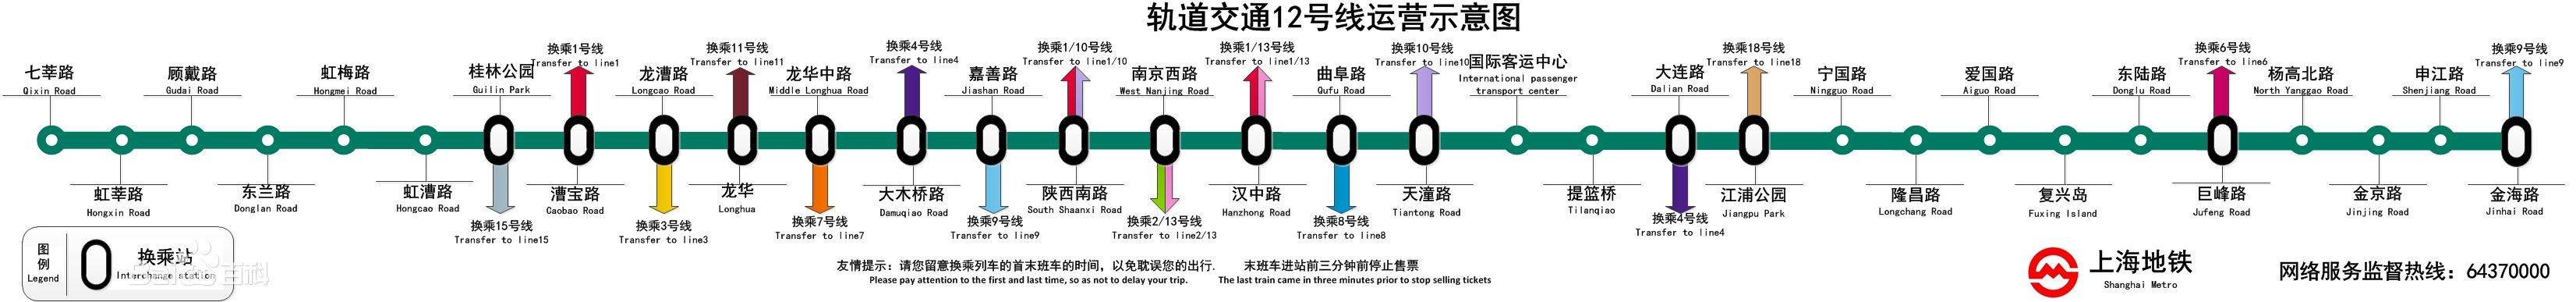 上海地铁路线图片图高清_上海地铁路线图高清_上海地铁路线图图片